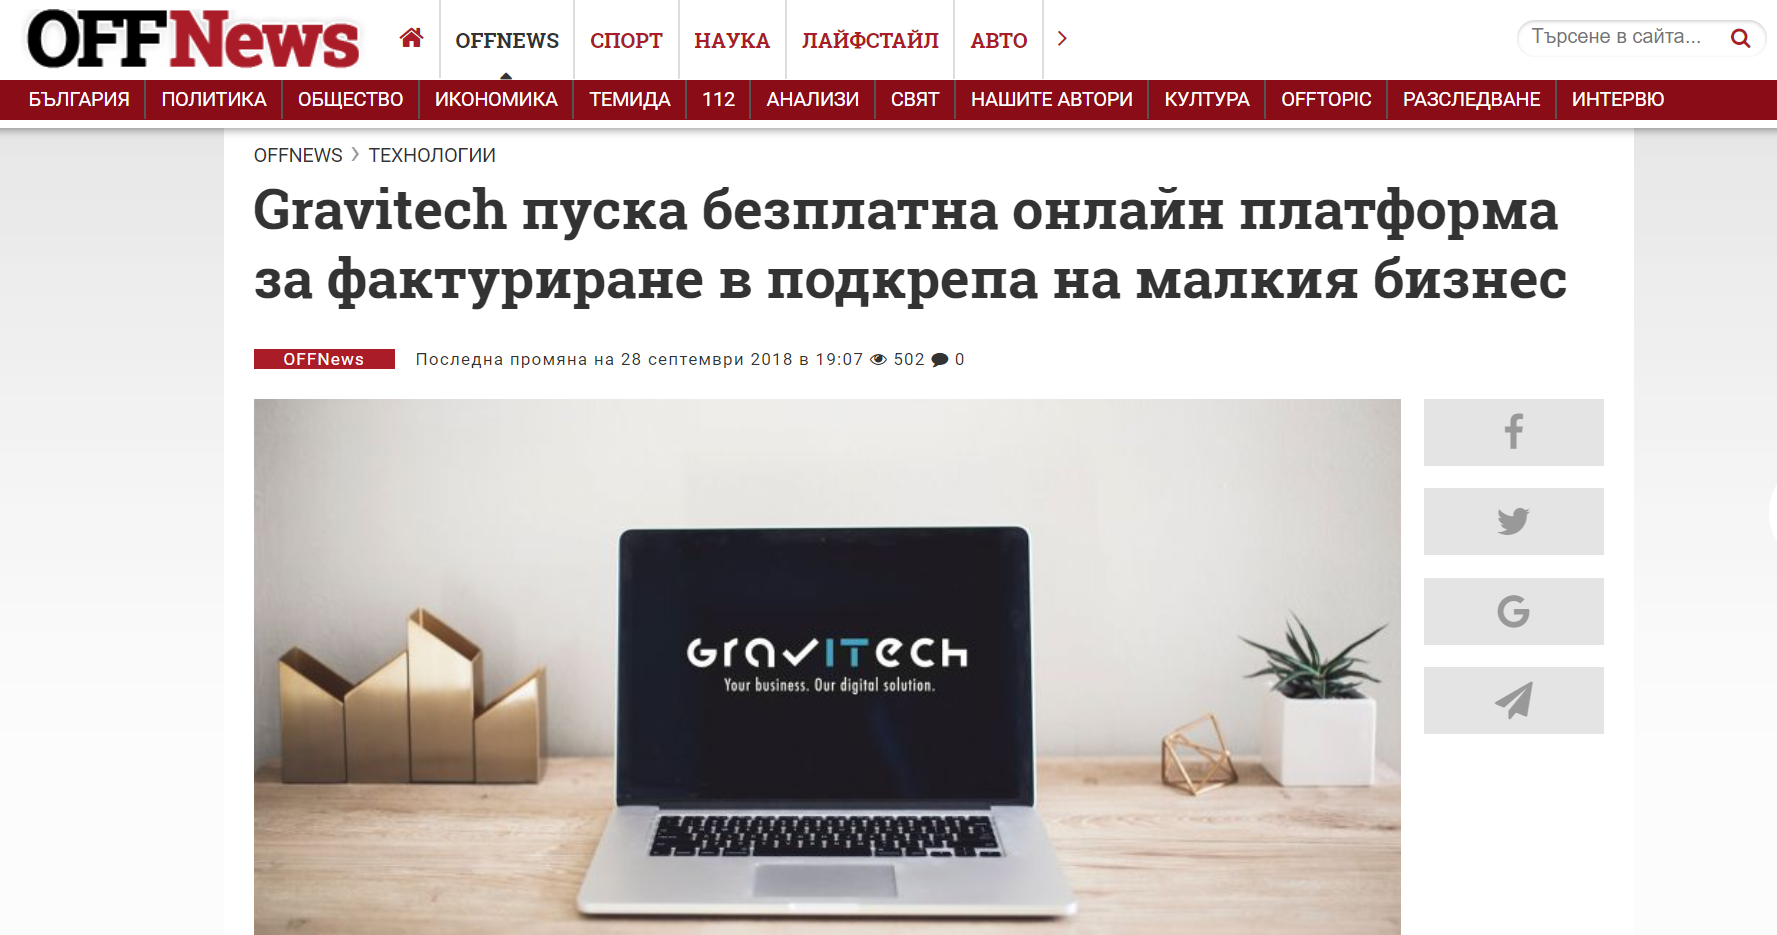 Gravitech пуска безплатна онлайн платформа за фактуриране в подкрепа на малкия бизнес